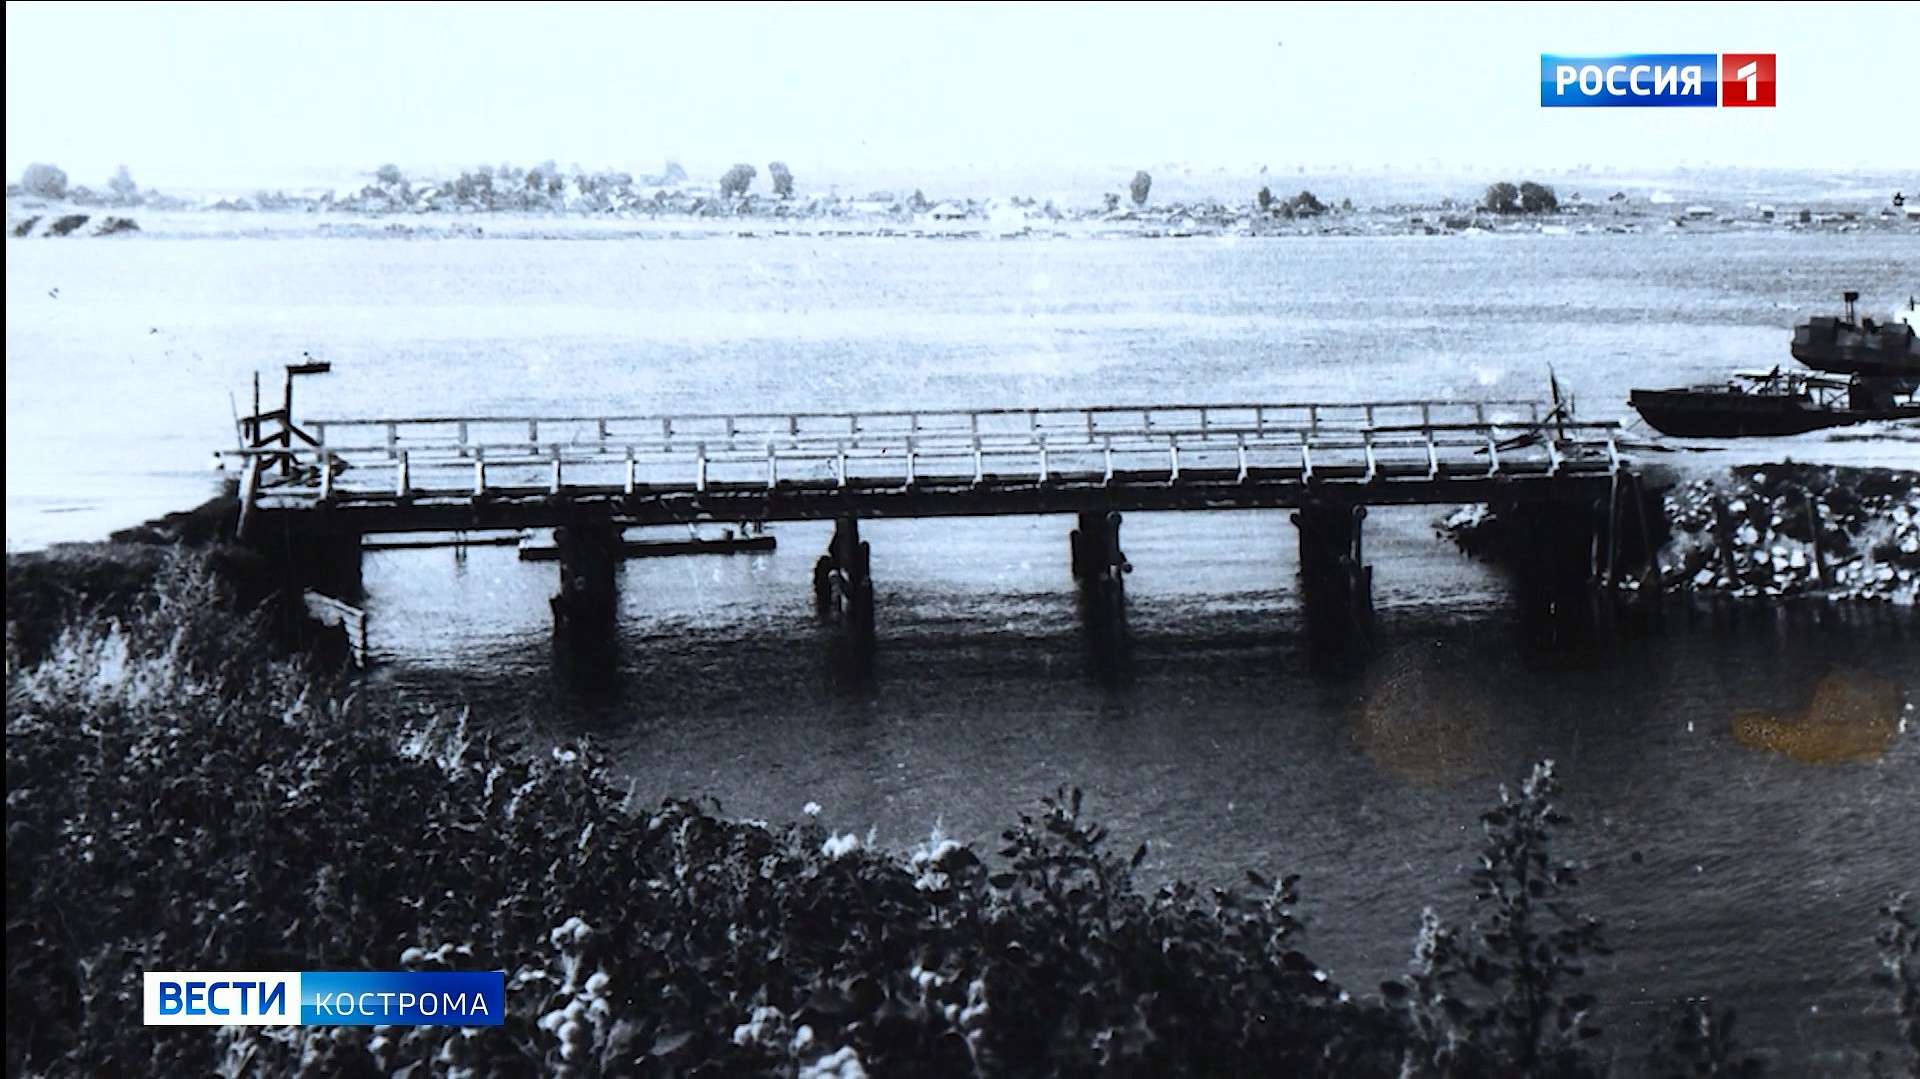 Мост через черную речку Кострома